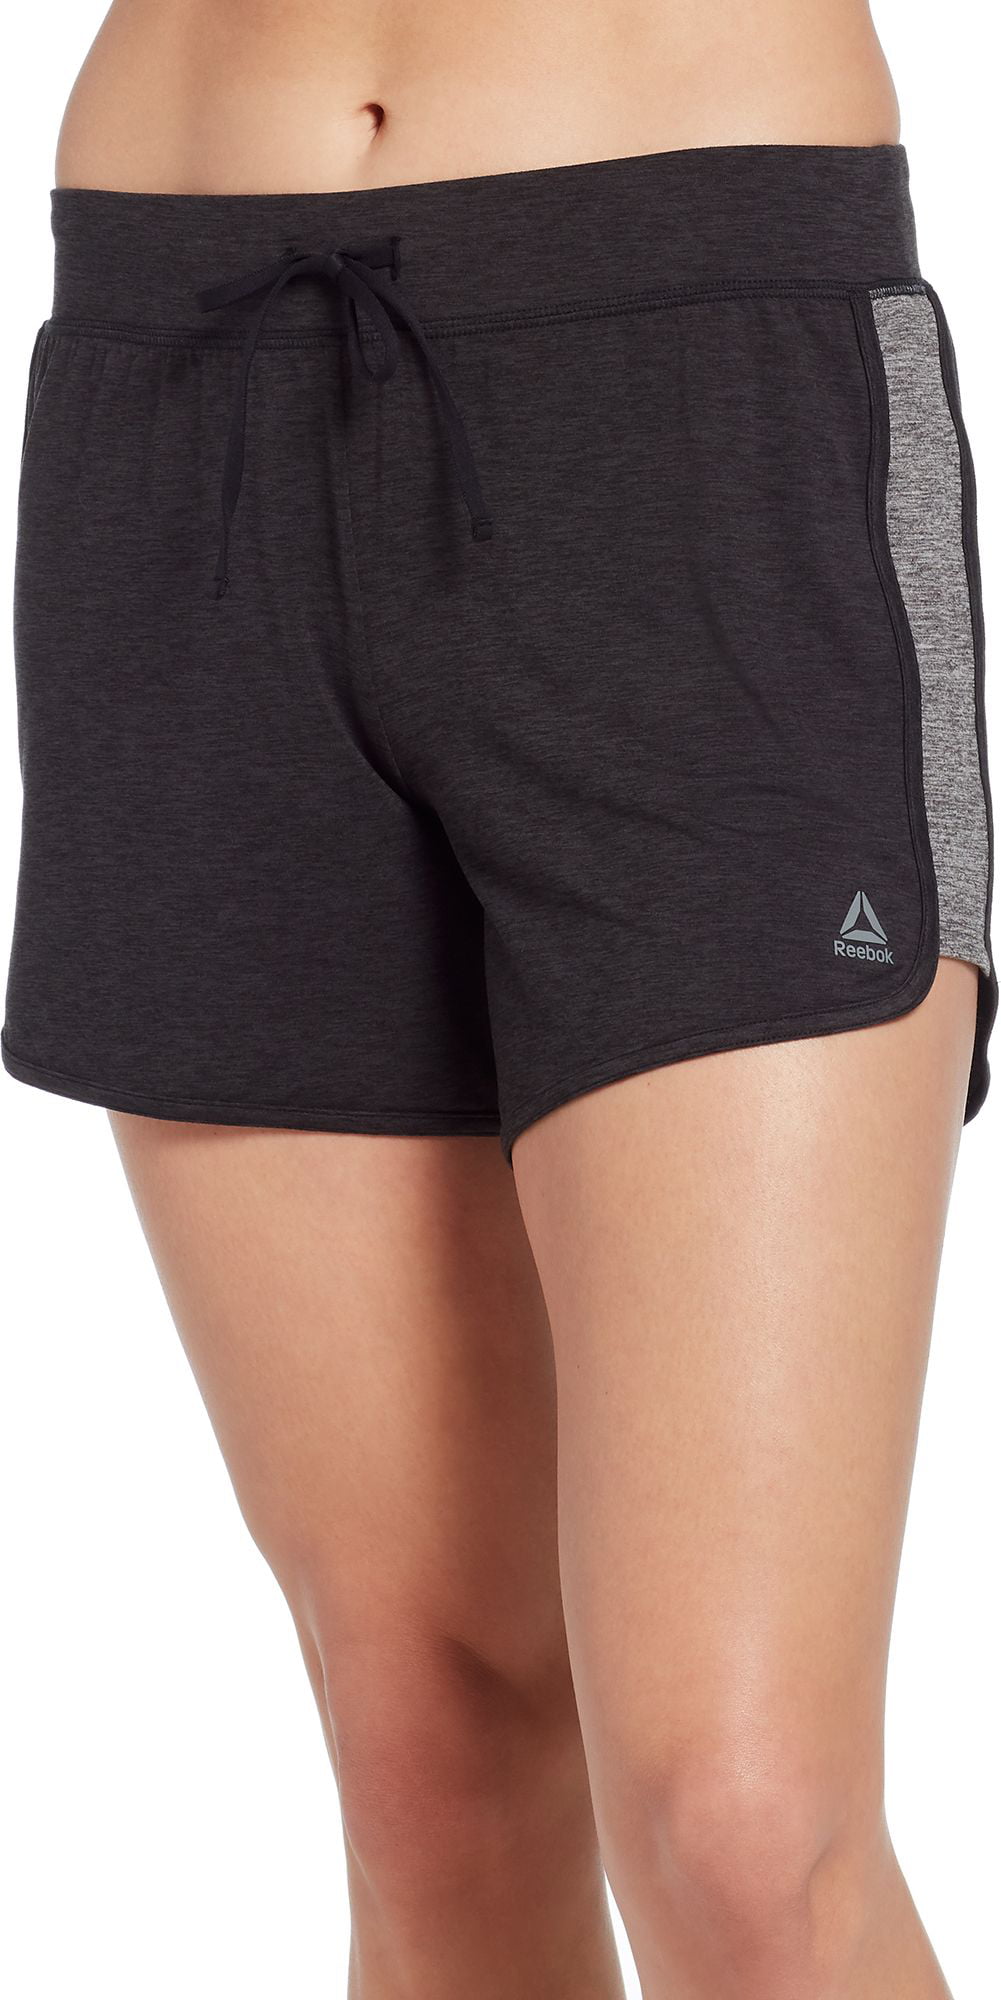 reebok women's jersey shorts